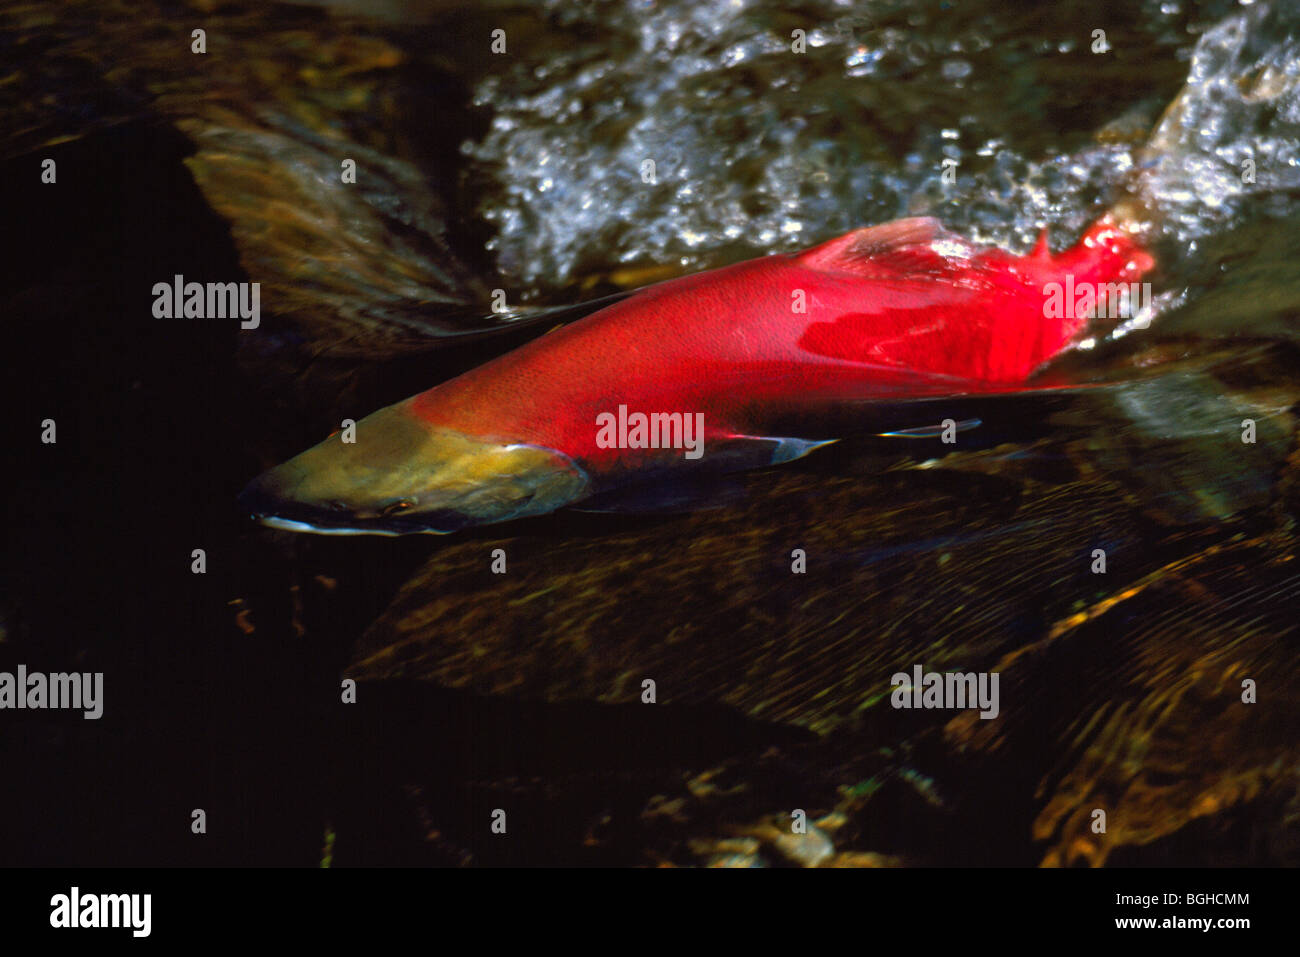 Le frai du saumon rouge (Oncorhynchus nerka) exécuter, les poissons remontant le courant, revenir frayer, Adams River, Colombie-Britannique, Canada Banque D'Images